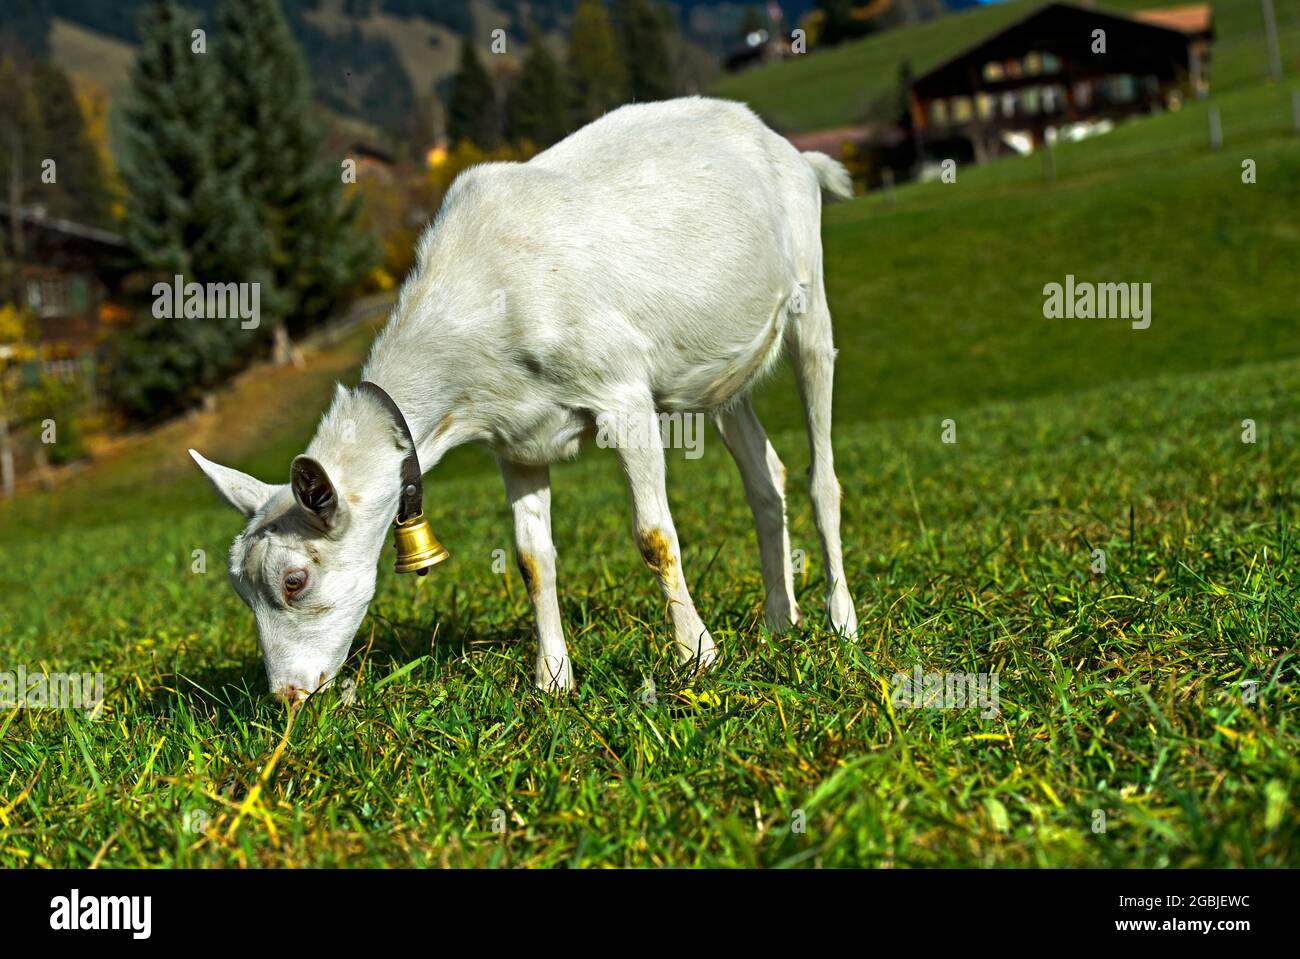 Grazing Unhorned Saanen Goat, Saanen, Obersimmental-Saanen, Canton Of Bern, Switzerland Stock Photo